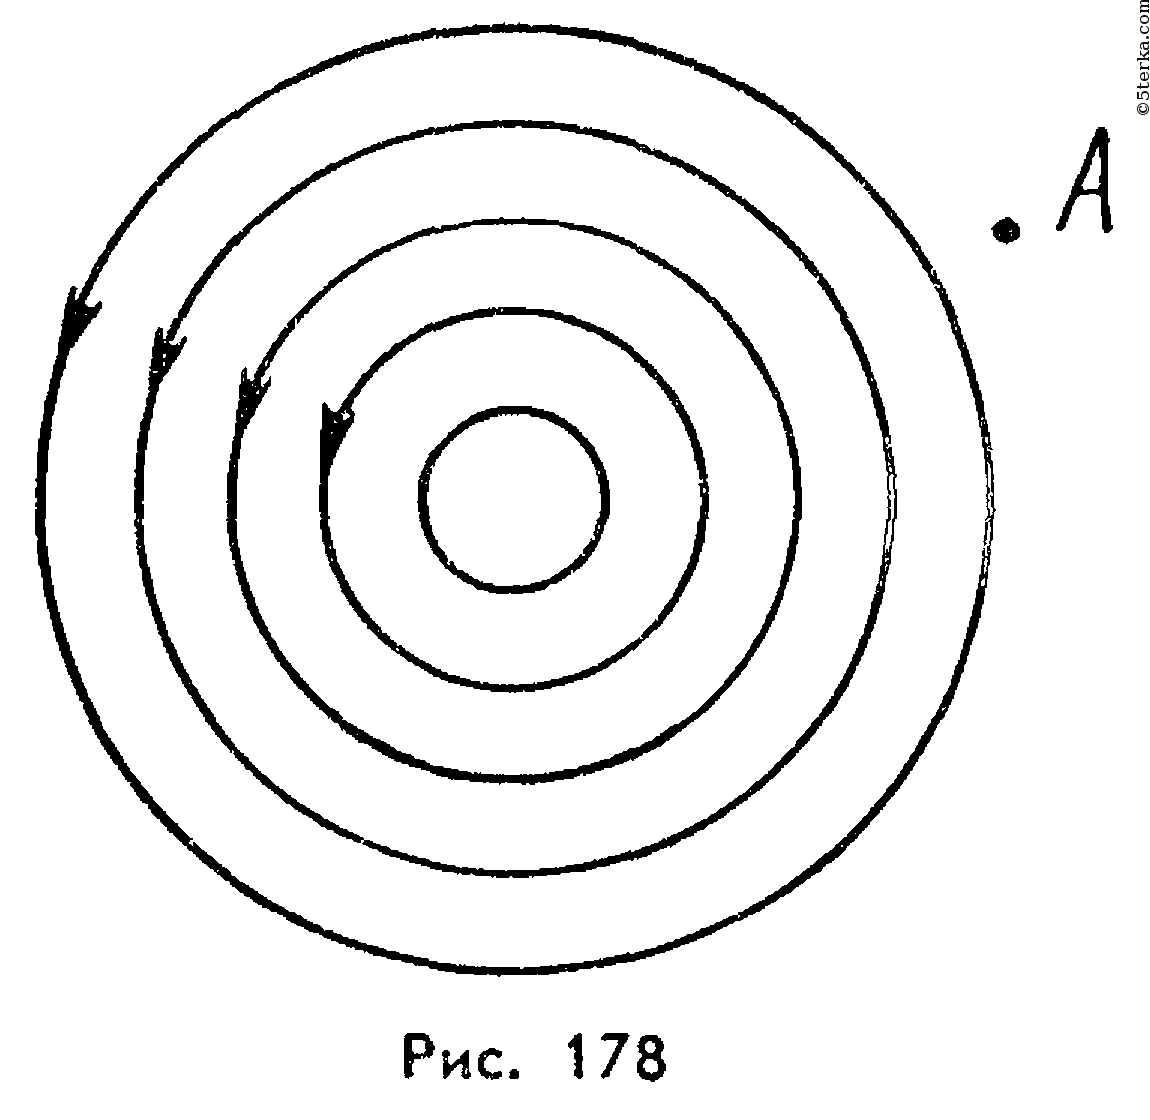 На рисунке показано положение магнитной стрелки установленной рядом с длинным прямым проводом по впр